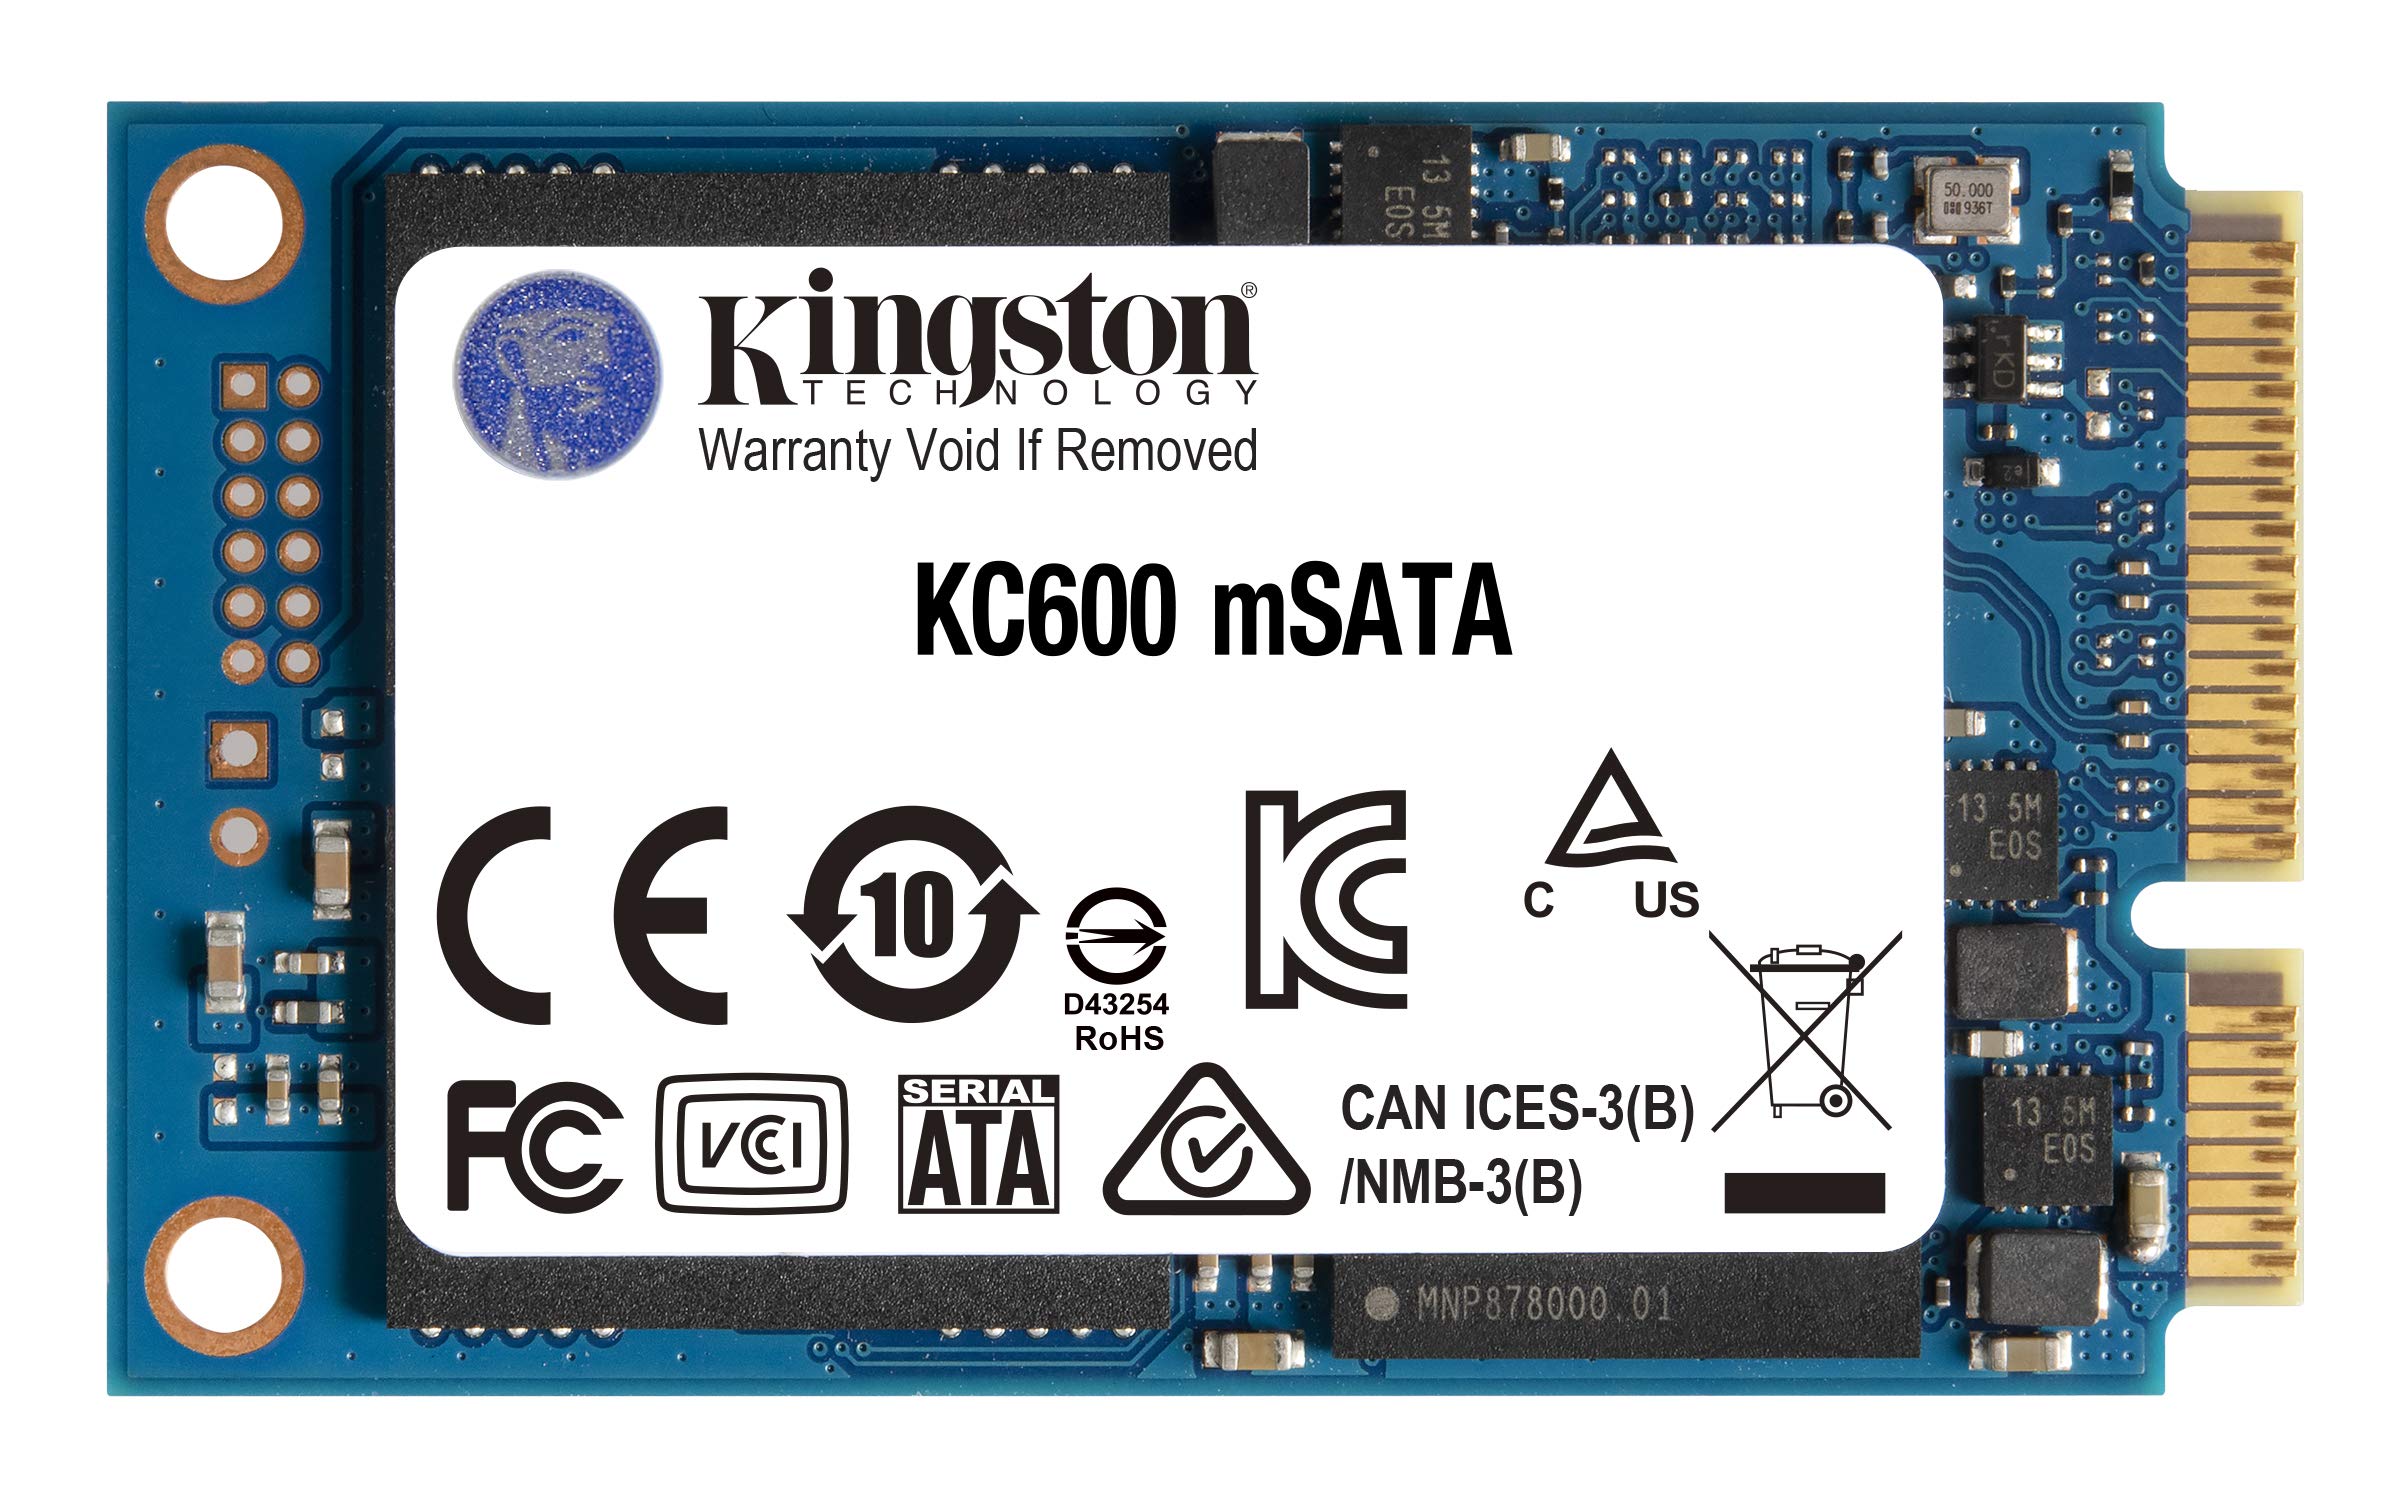 キングストンテクノロジー Kingston SSD KC600 512GB mSATA 3D TLC NAND採用 SKC600MS512G 削除削除品 5年削